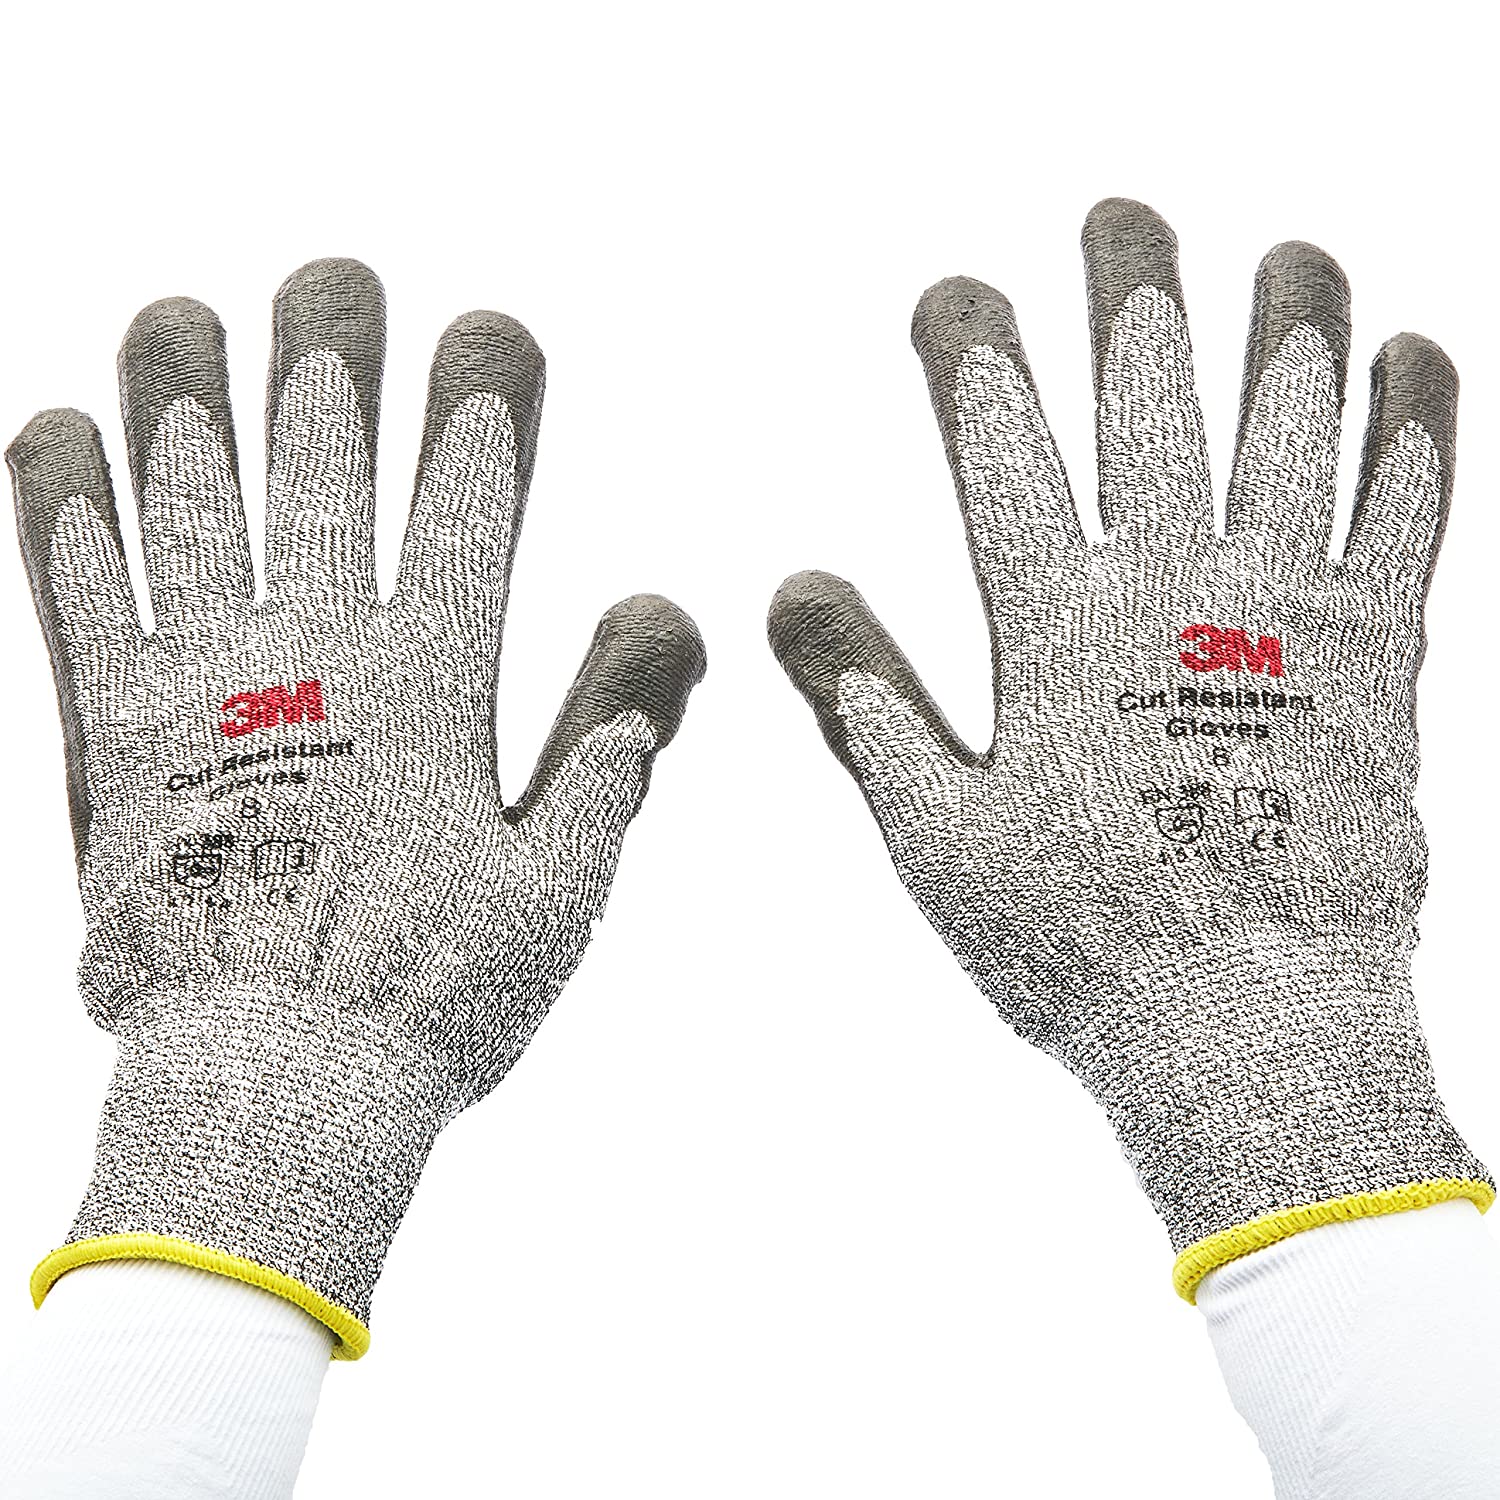 3M Comfort Grip Cut Resistant Gloves M, L, XL